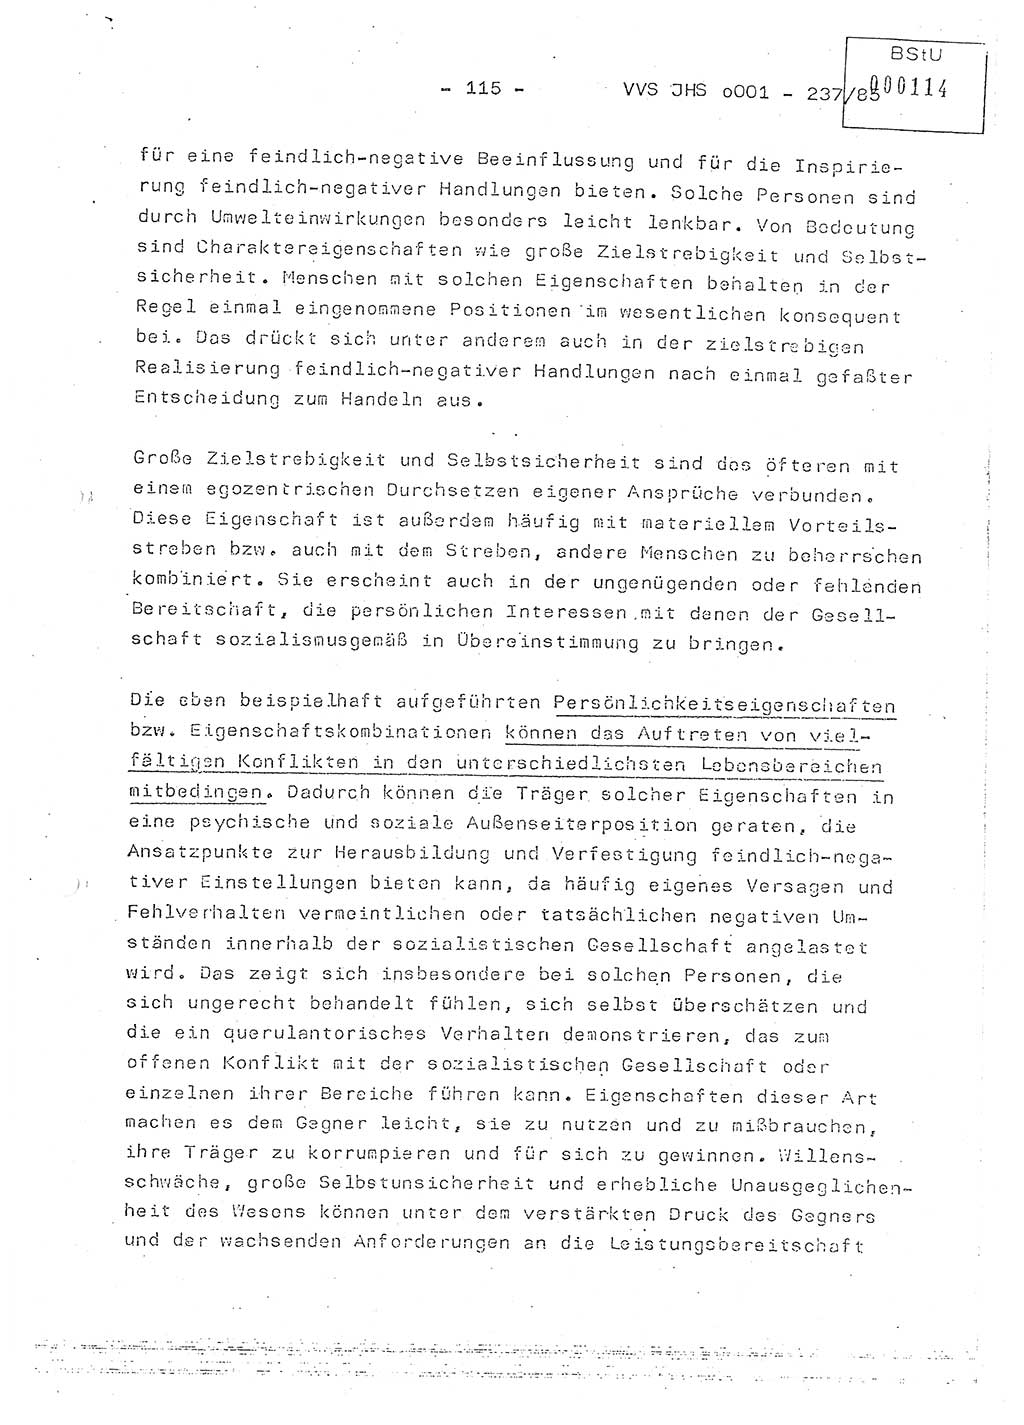 Dissertation Oberstleutnant Peter Jakulski (JHS), Oberstleutnat Christian Rudolph (HA Ⅸ), Major Horst Böttger (ZMD), Major Wolfgang Grüneberg (JHS), Major Albert Meutsch (JHS), Ministerium für Staatssicherheit (MfS) [Deutsche Demokratische Republik (DDR)], Juristische Hochschule (JHS), Vertrauliche Verschlußsache (VVS) o001-237/85, Potsdam 1985, Seite 115 (Diss. MfS DDR JHS VVS o001-237/85 1985, S. 115)